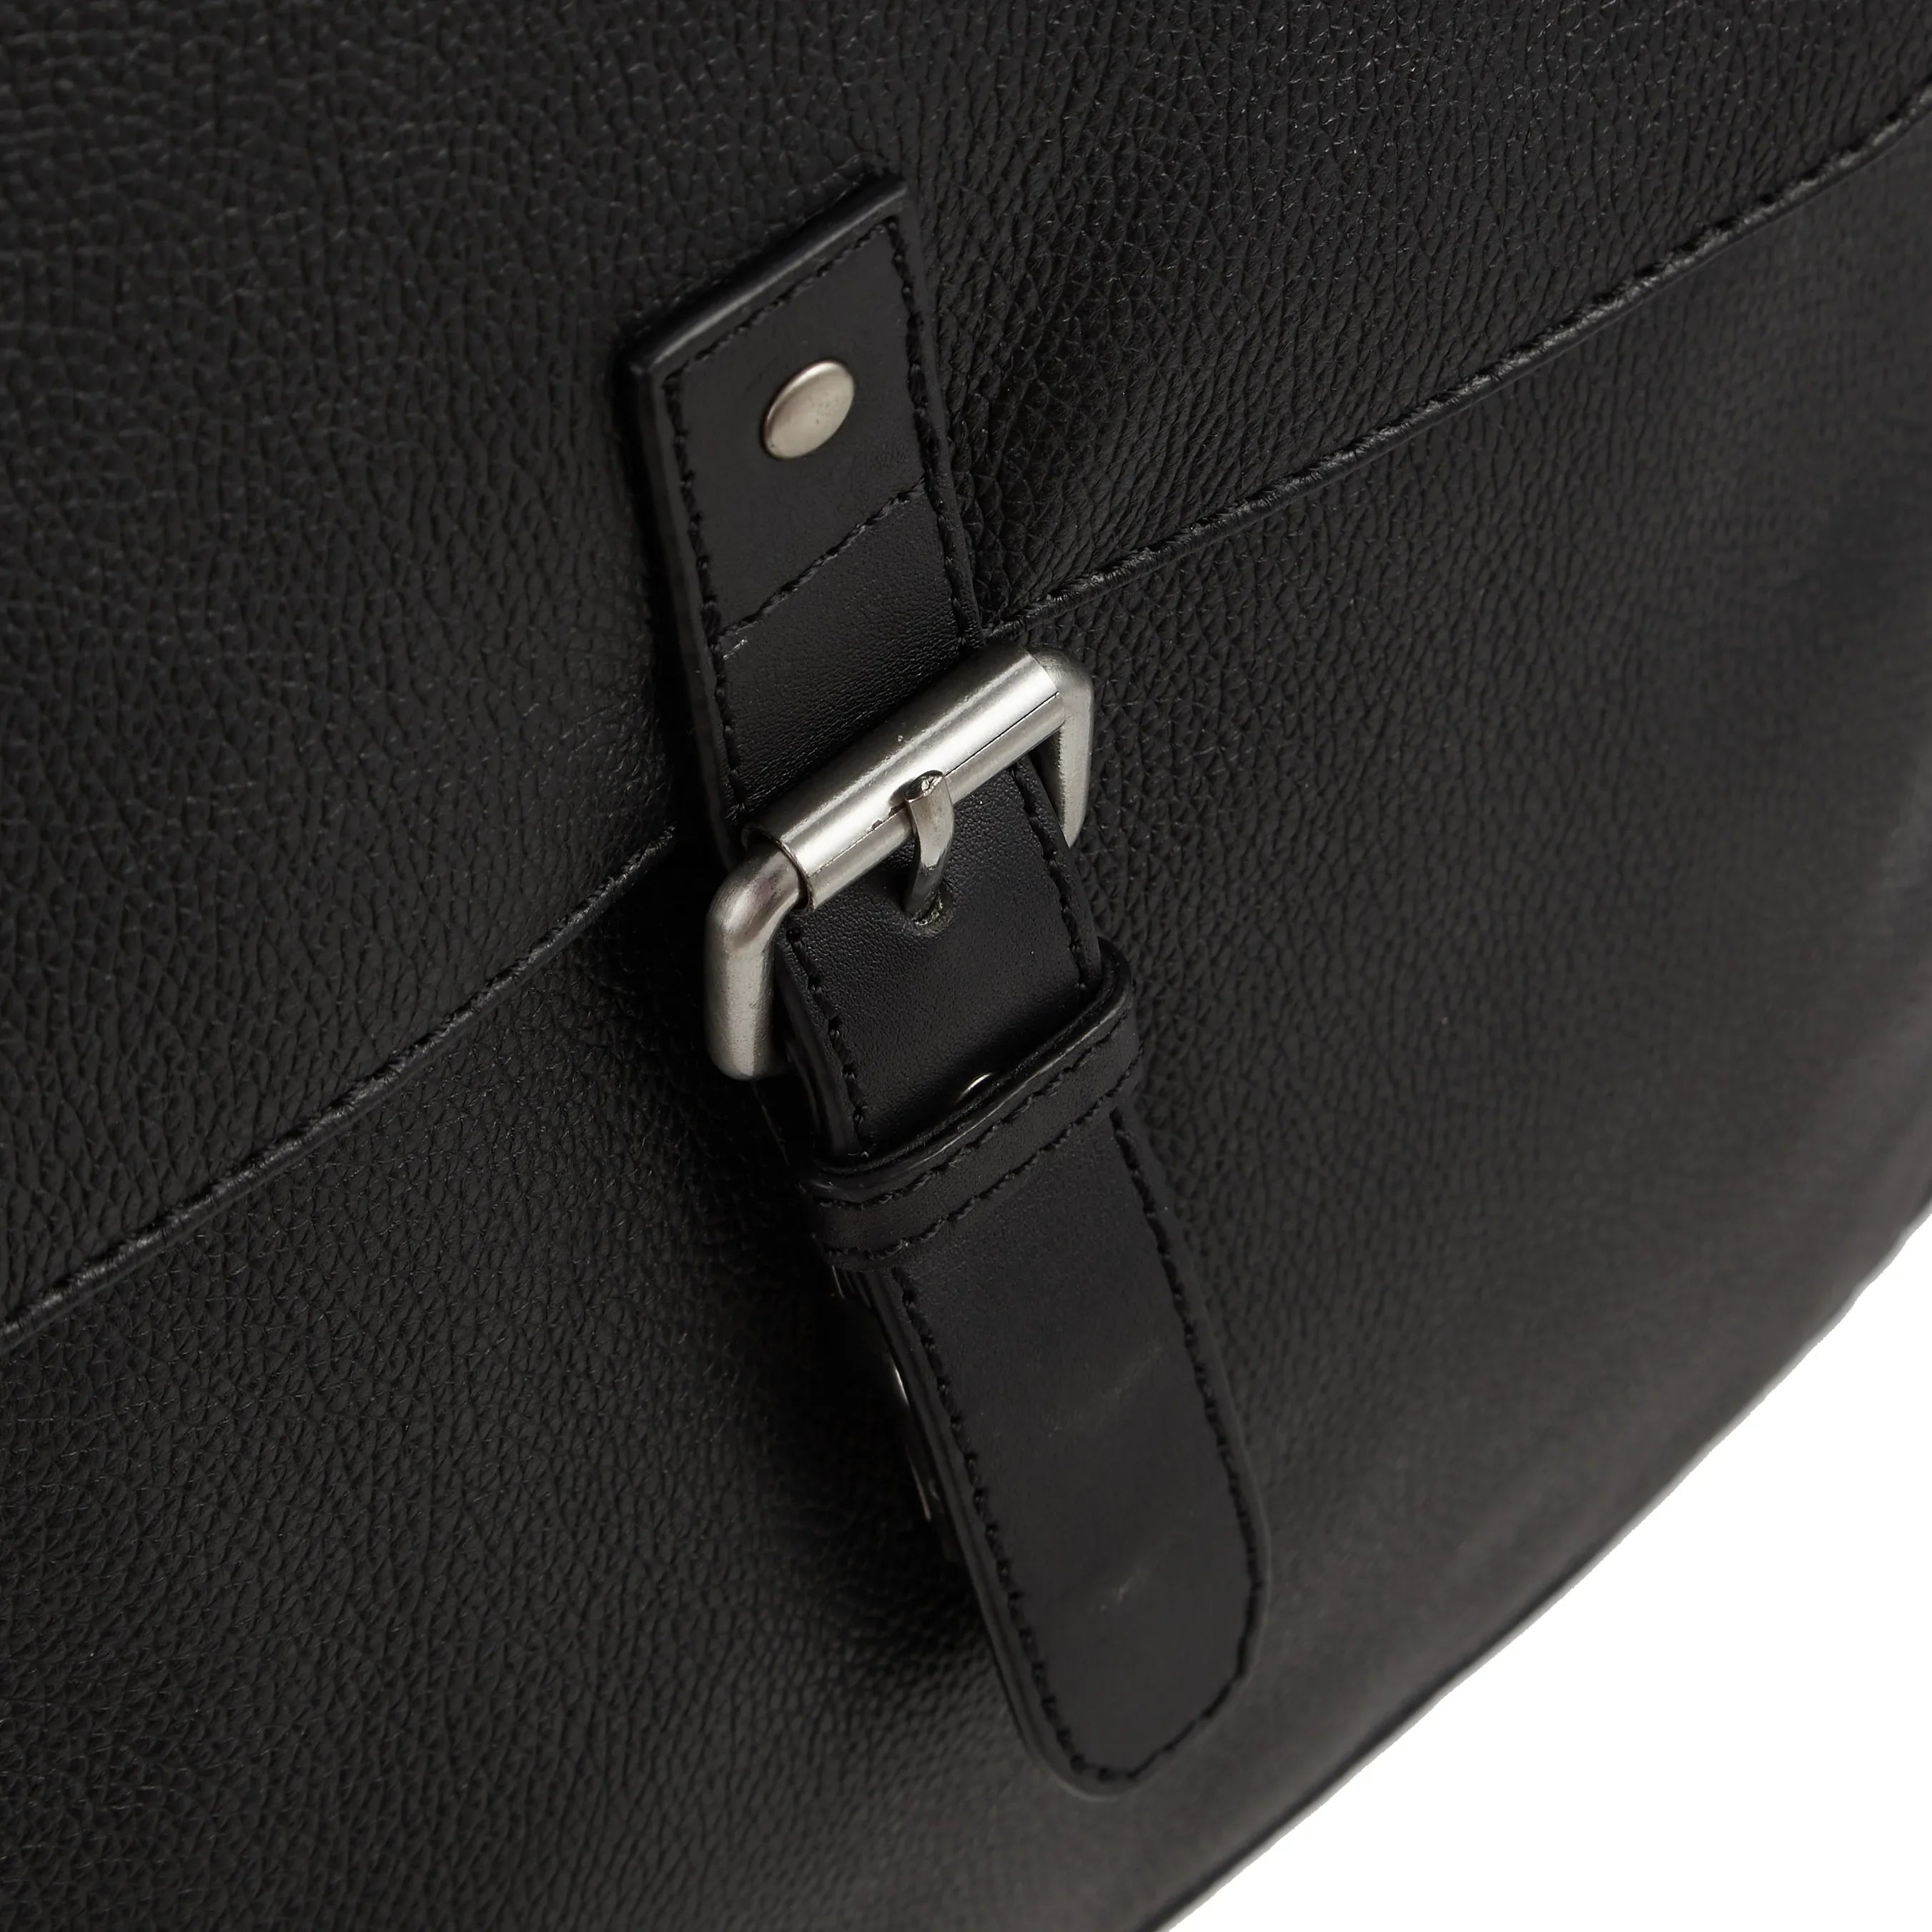 Leonhard Heyden Frankfurt laptop backpack 41 cm - black